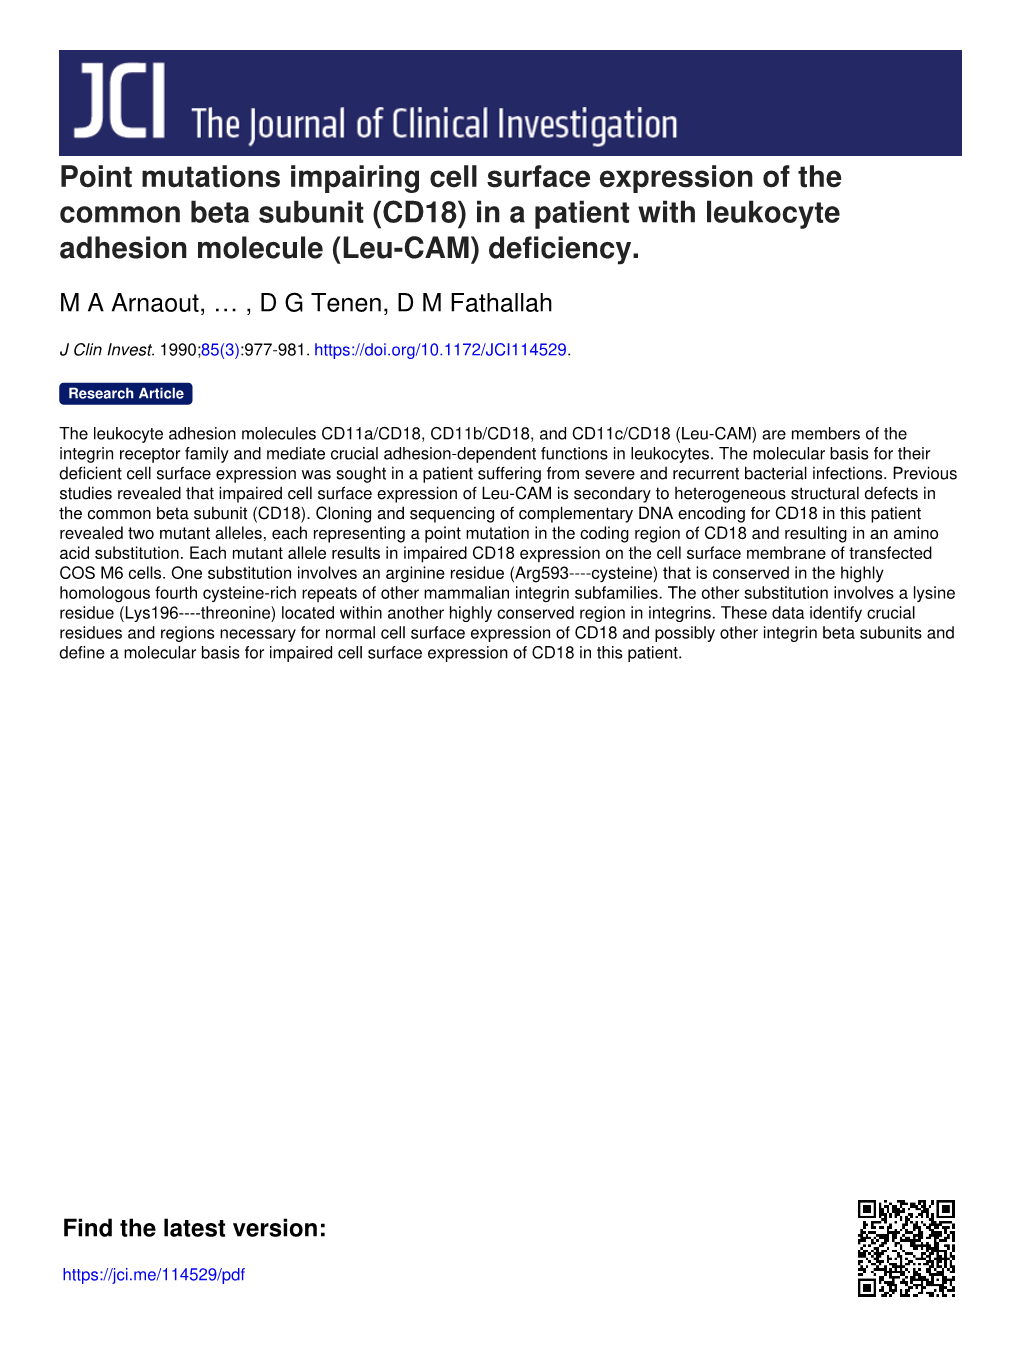 CD18) in a Patient with Leukocyte Adhesion Molecule (Leu-CAM) Deficiency